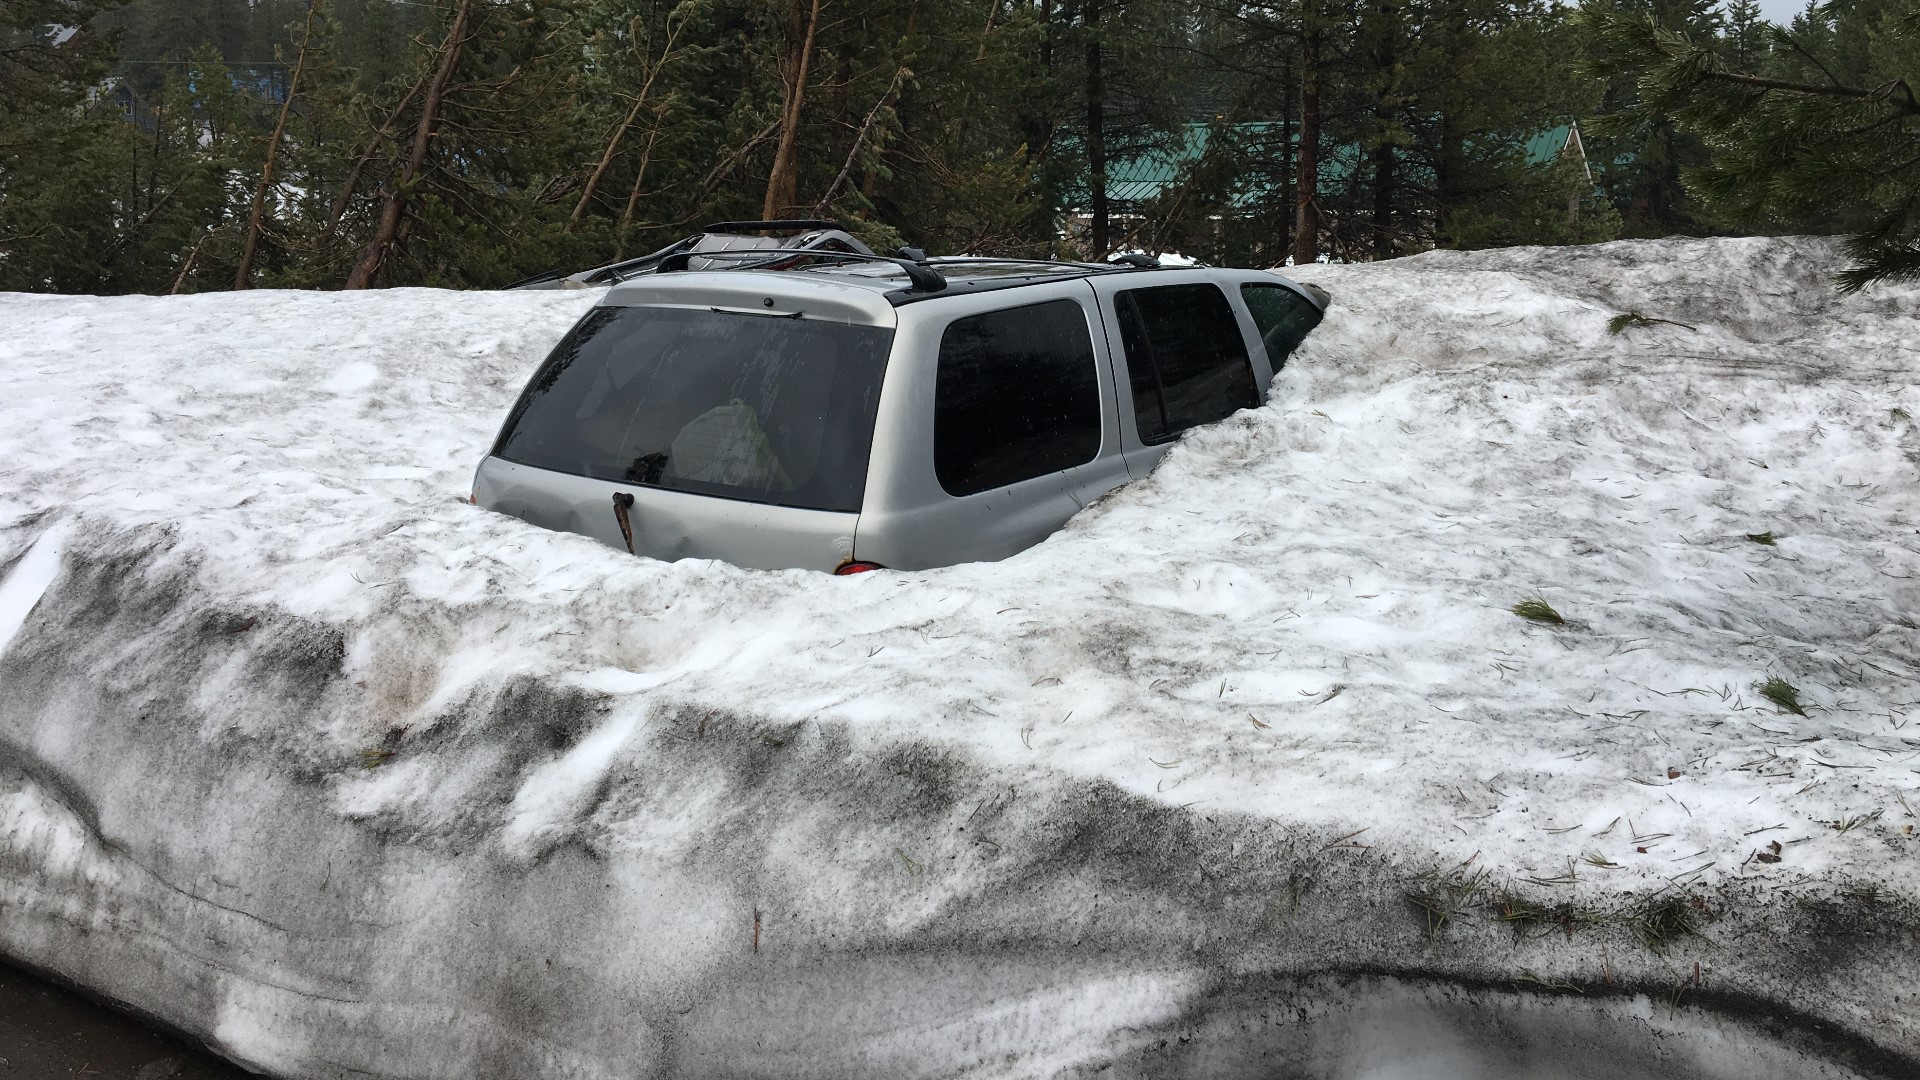 Spring snowstorm in the Sierra has Soda Springs residents on alert